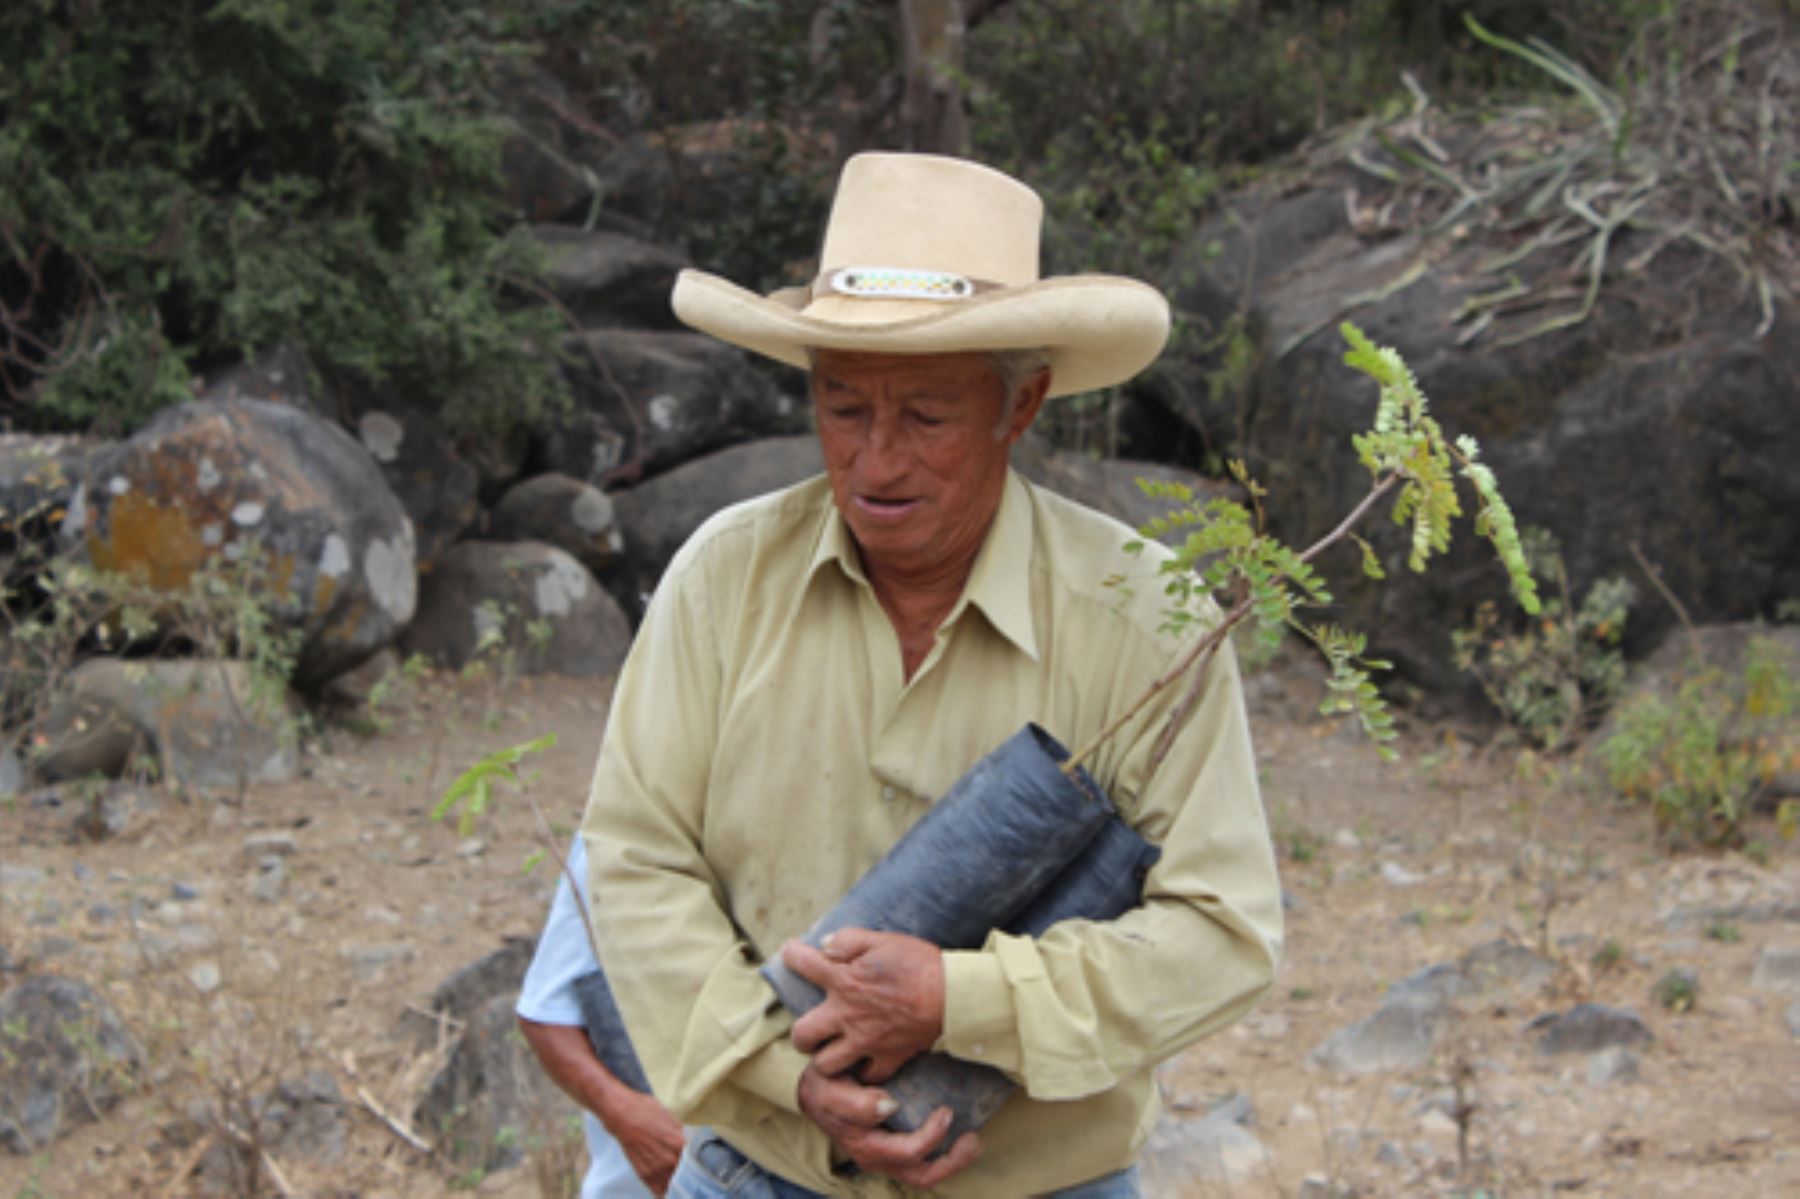 Población de Tumán participa en siembra de 1,000 plantones de algarrobo para reforestación del bosque seco en ese sector de Chiclayo.